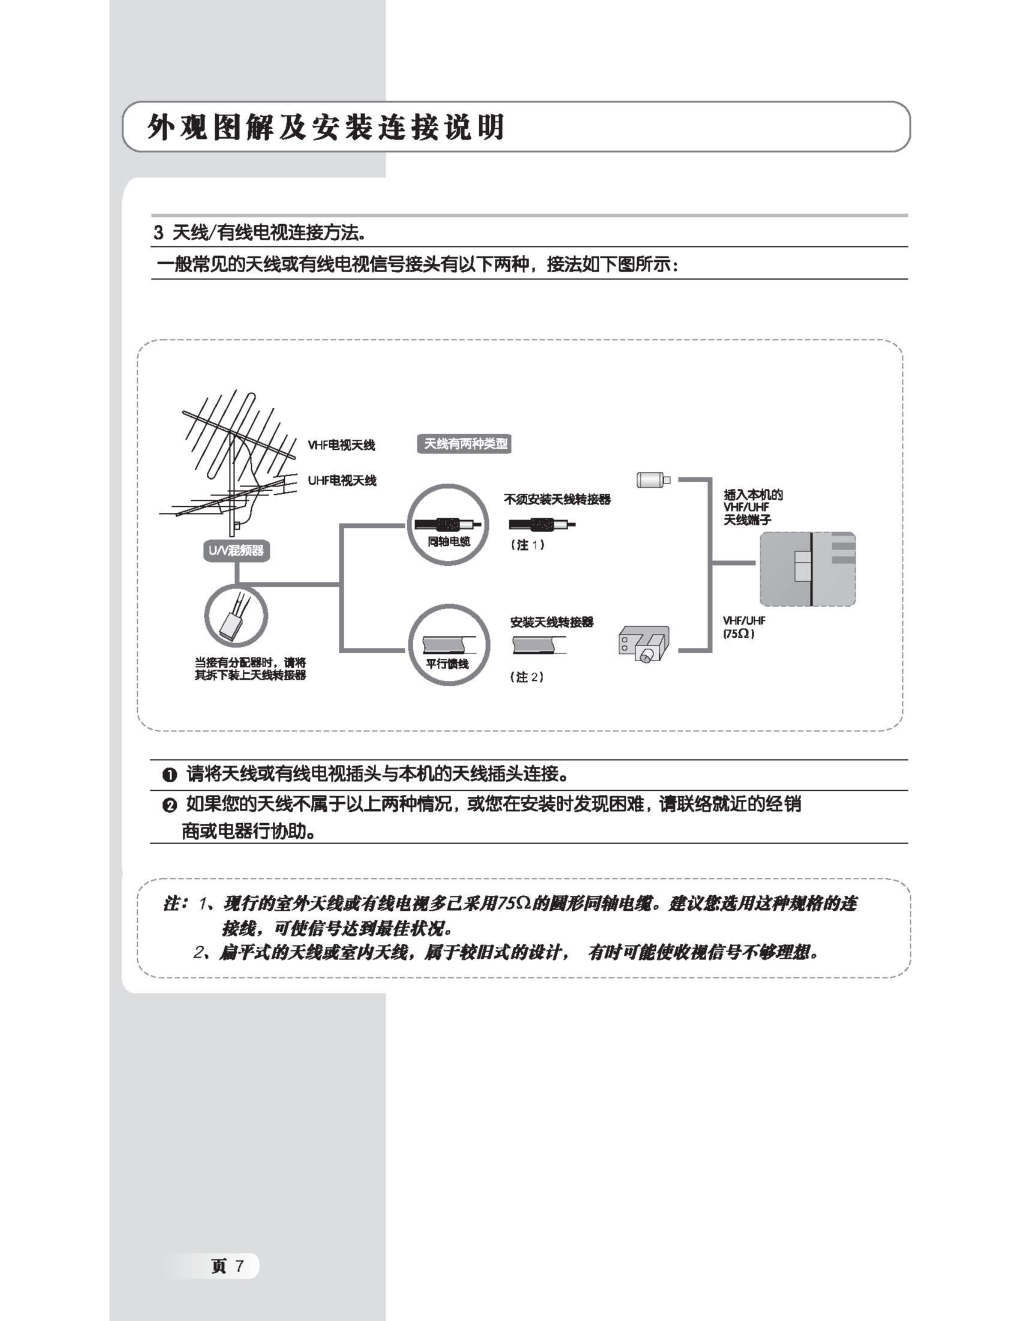 TCL王牌LCD26M15液晶彩电使用说明书-7